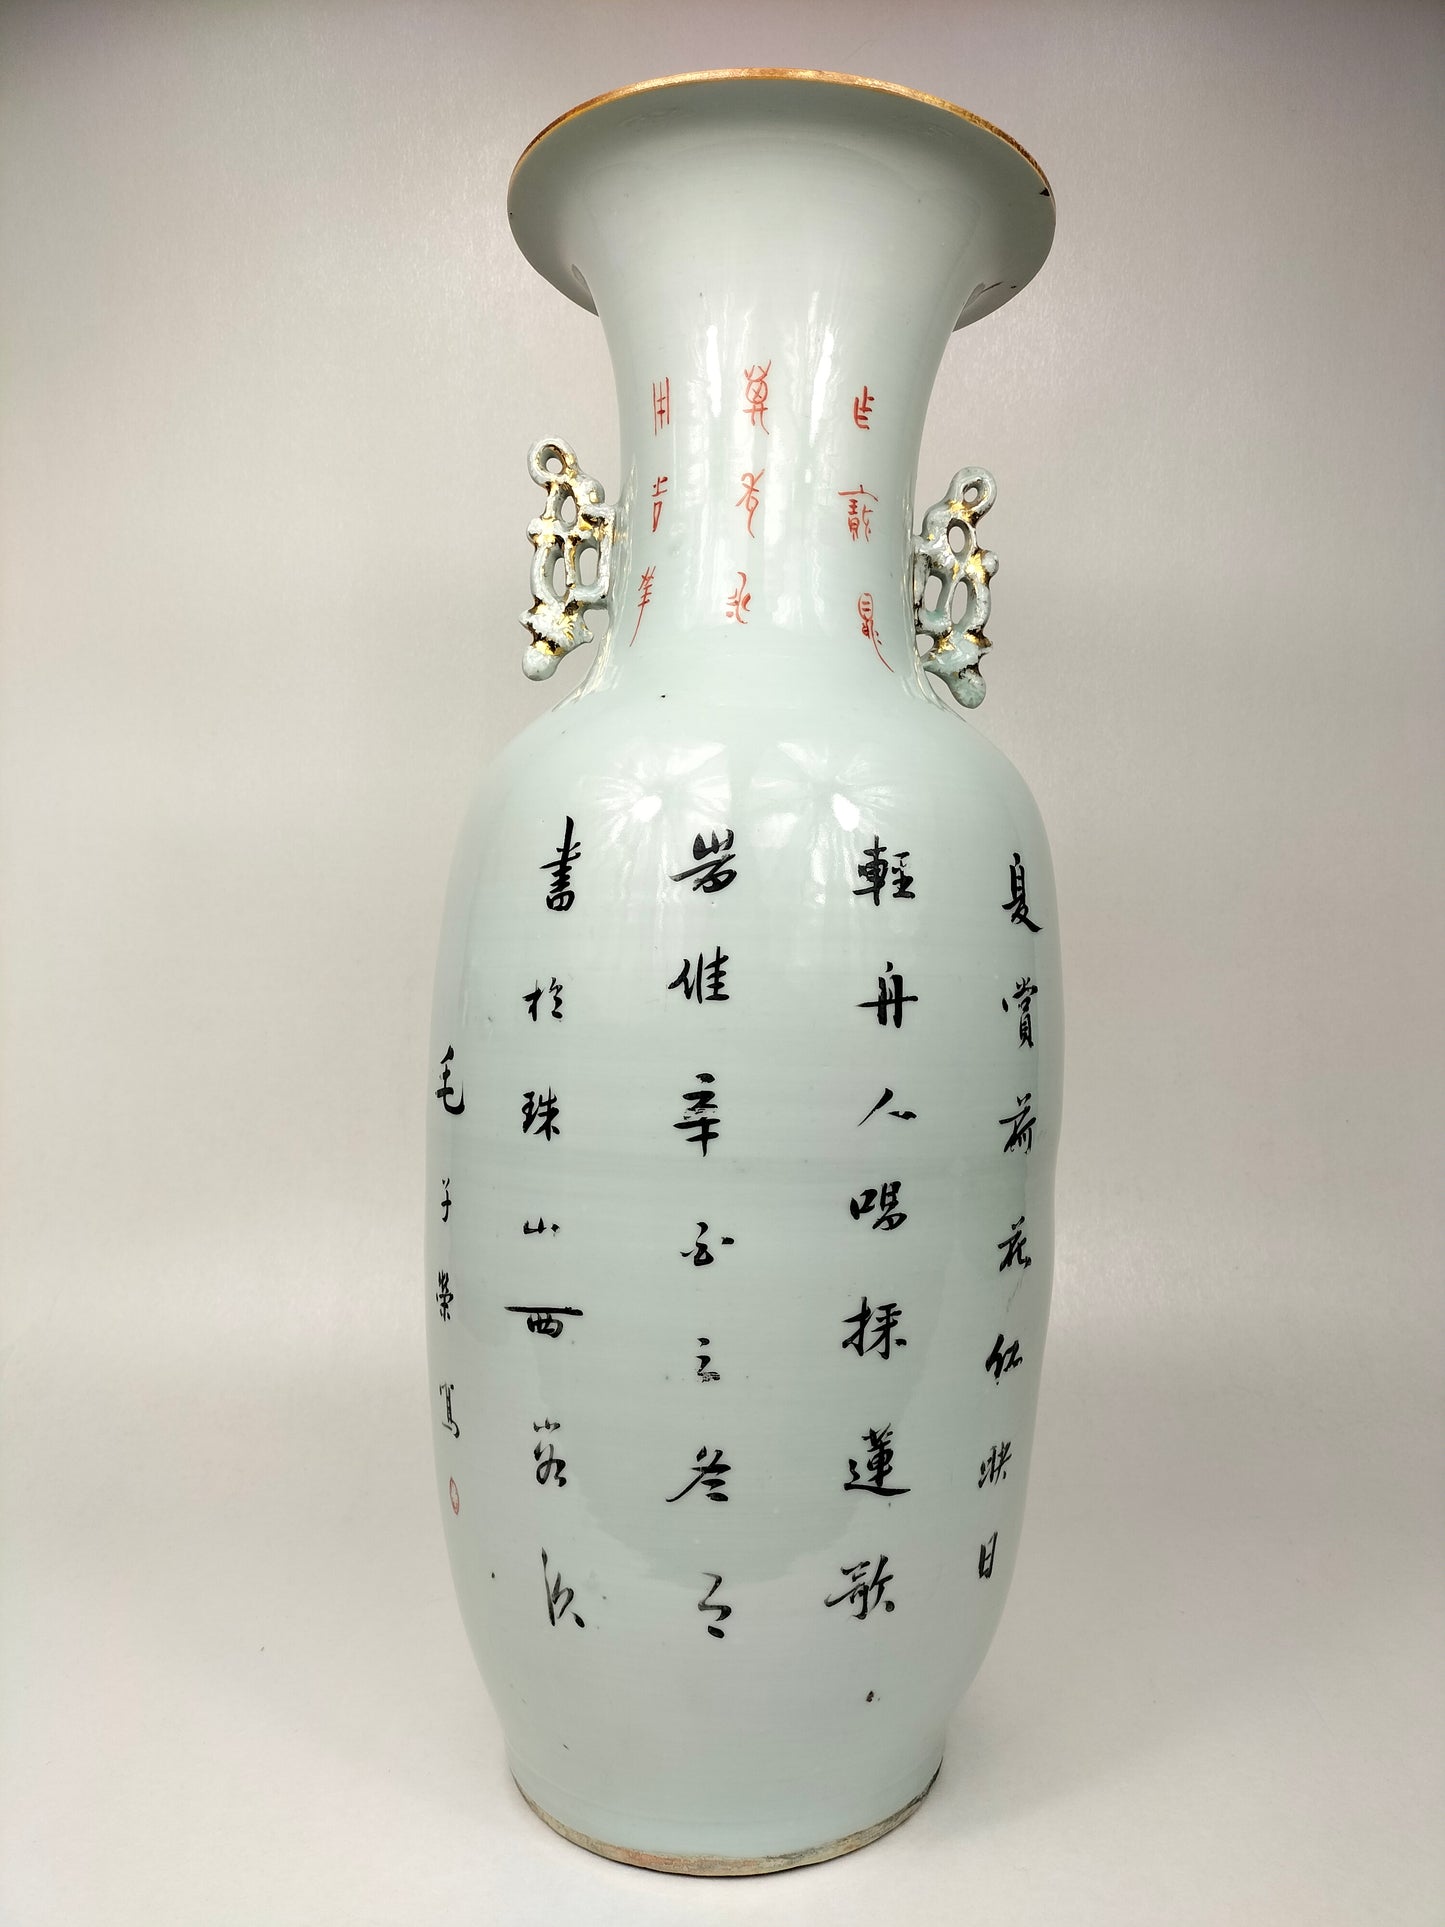 装饰有皇家场景的大型古董中国花瓶 // 民国时期（1912-1949）